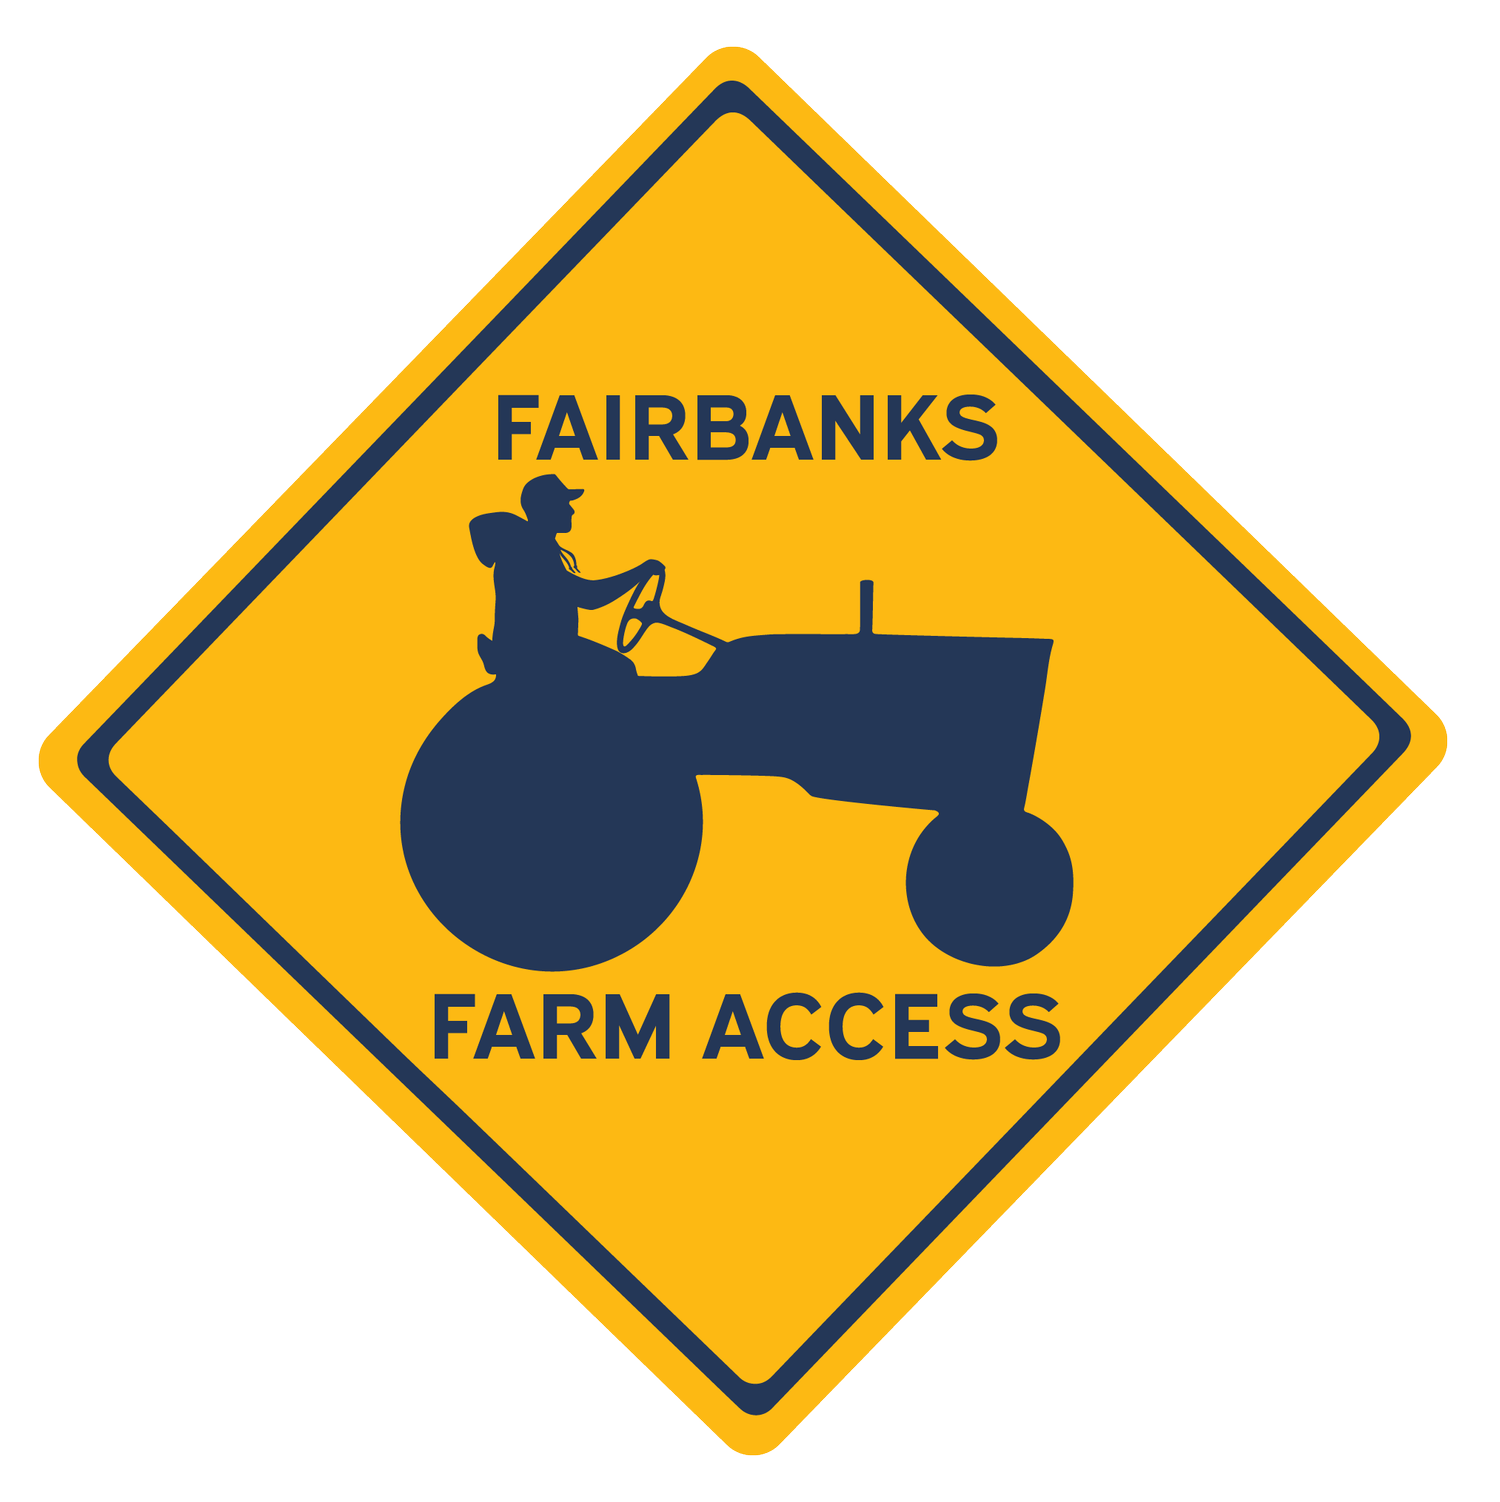 Fairbanks Farm Access